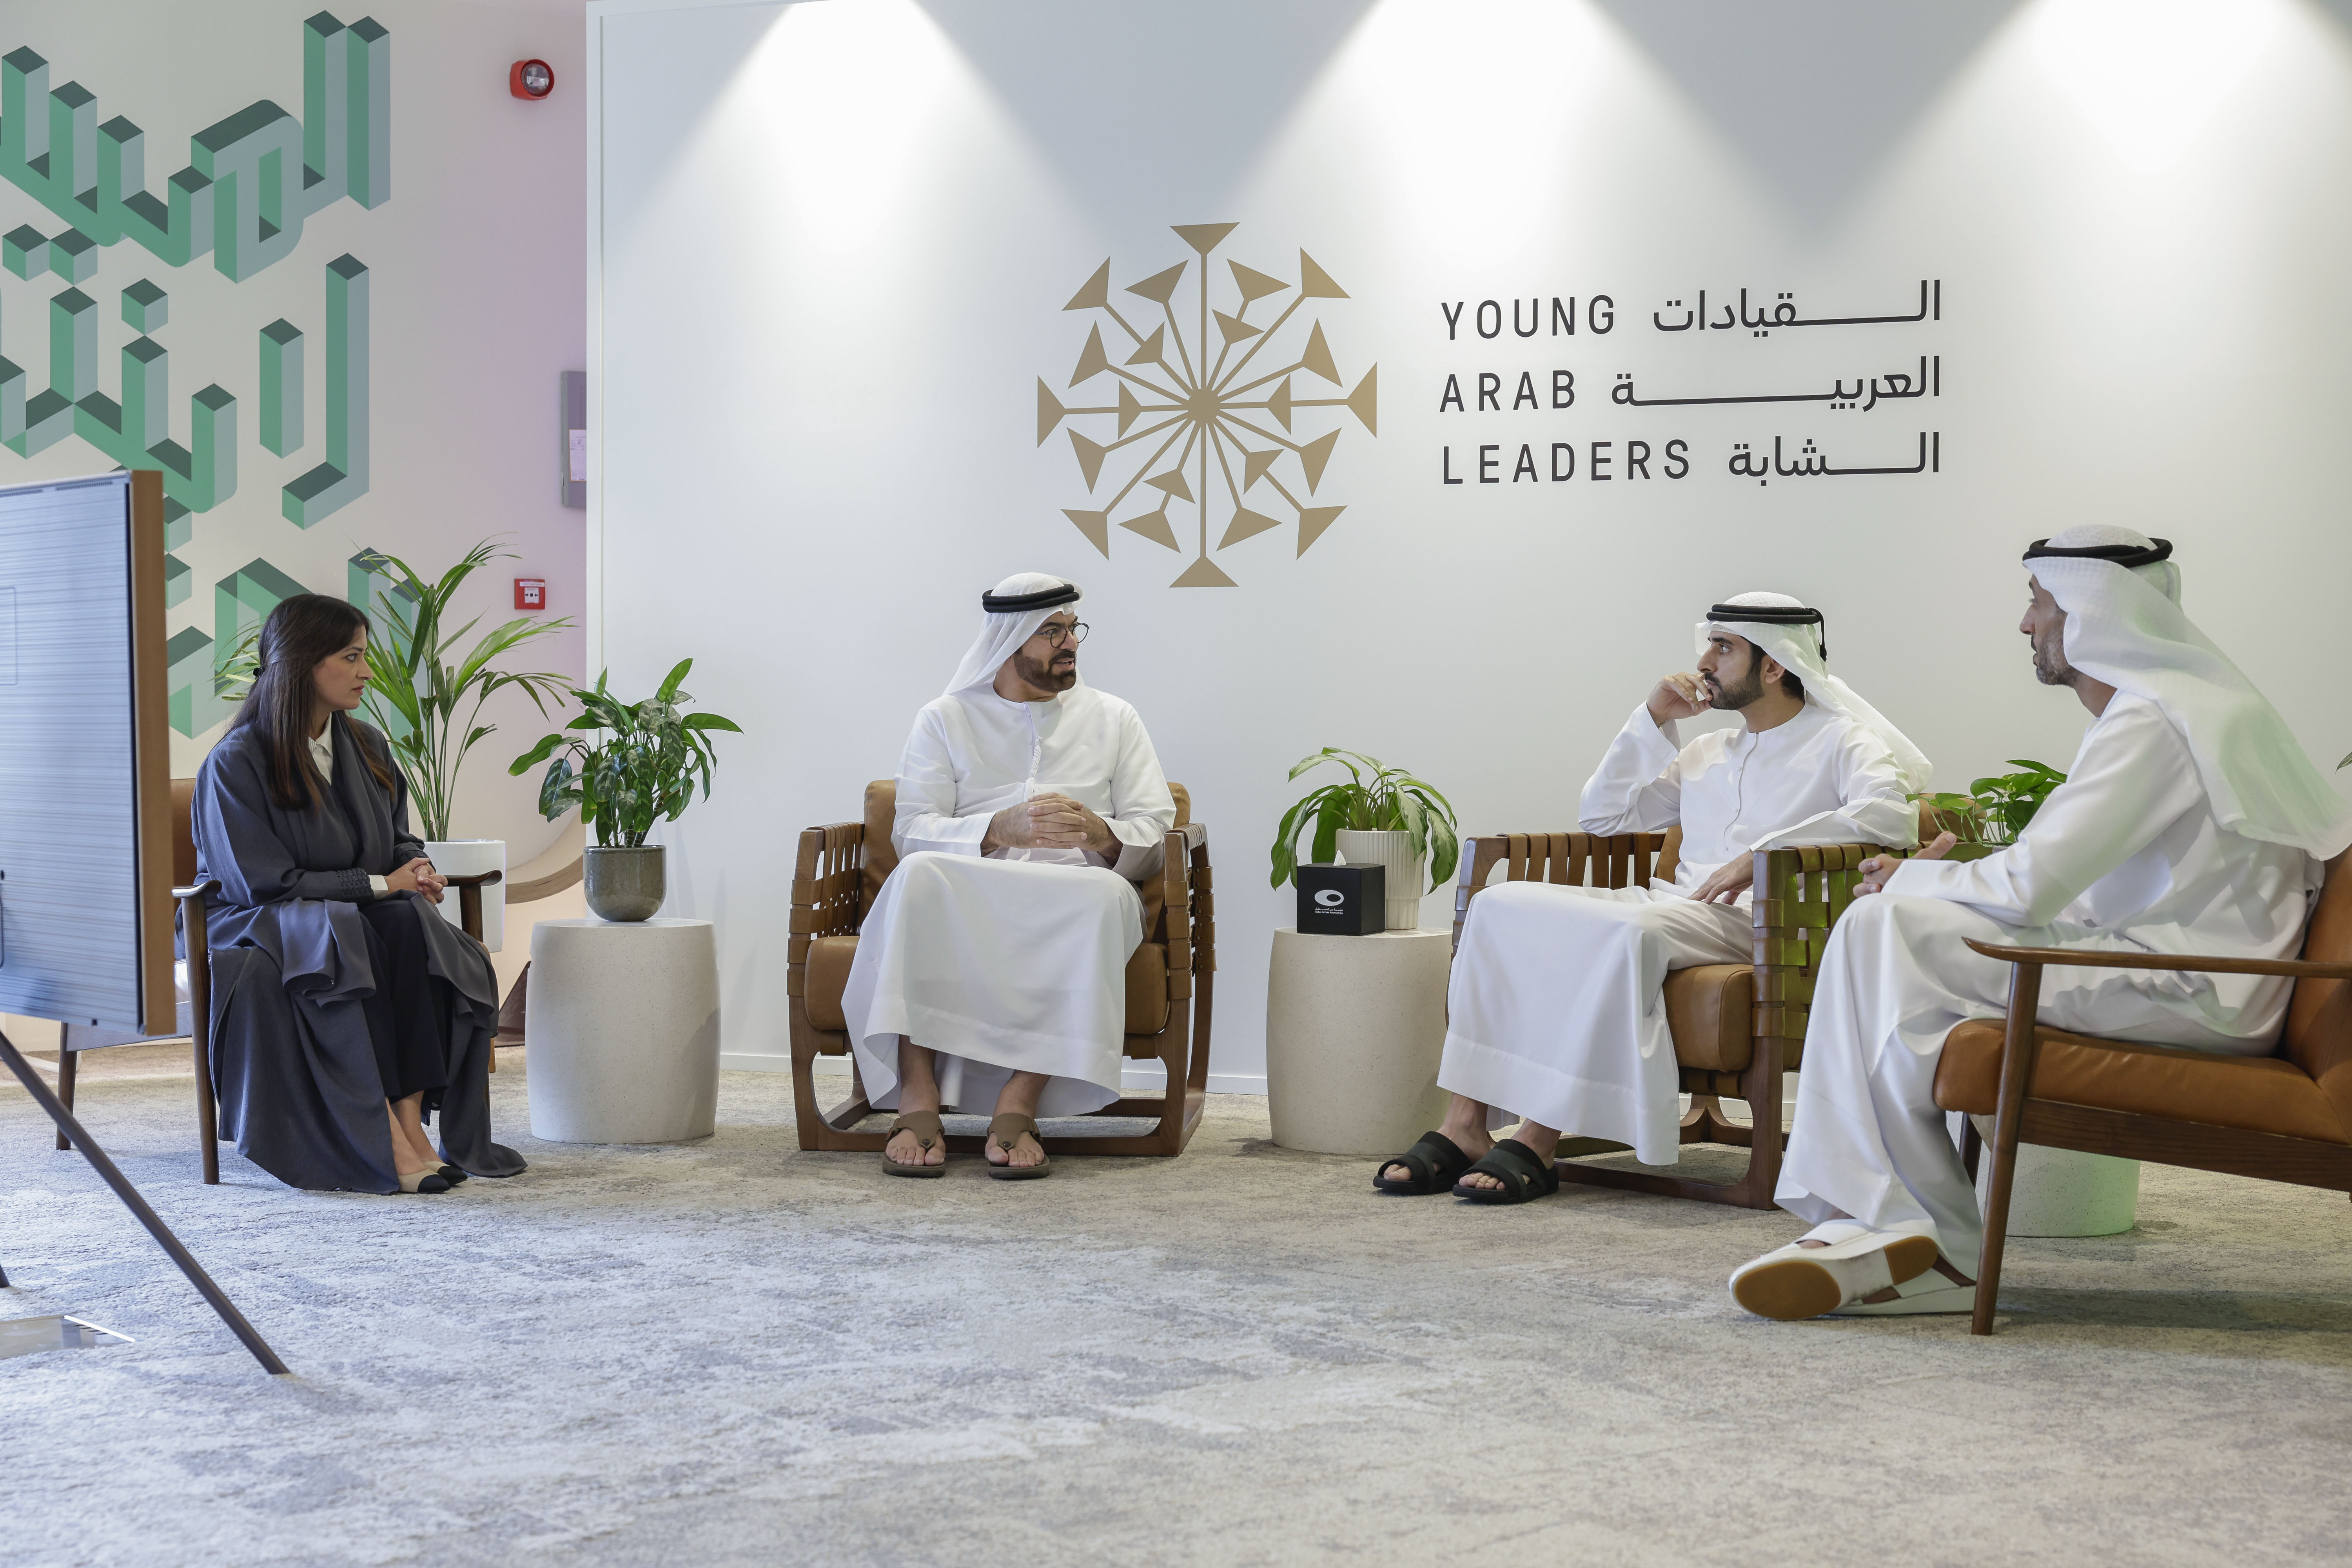 حمدان بن محمد يقيّم الخطط المستقبلية للقادة العرب الشباب